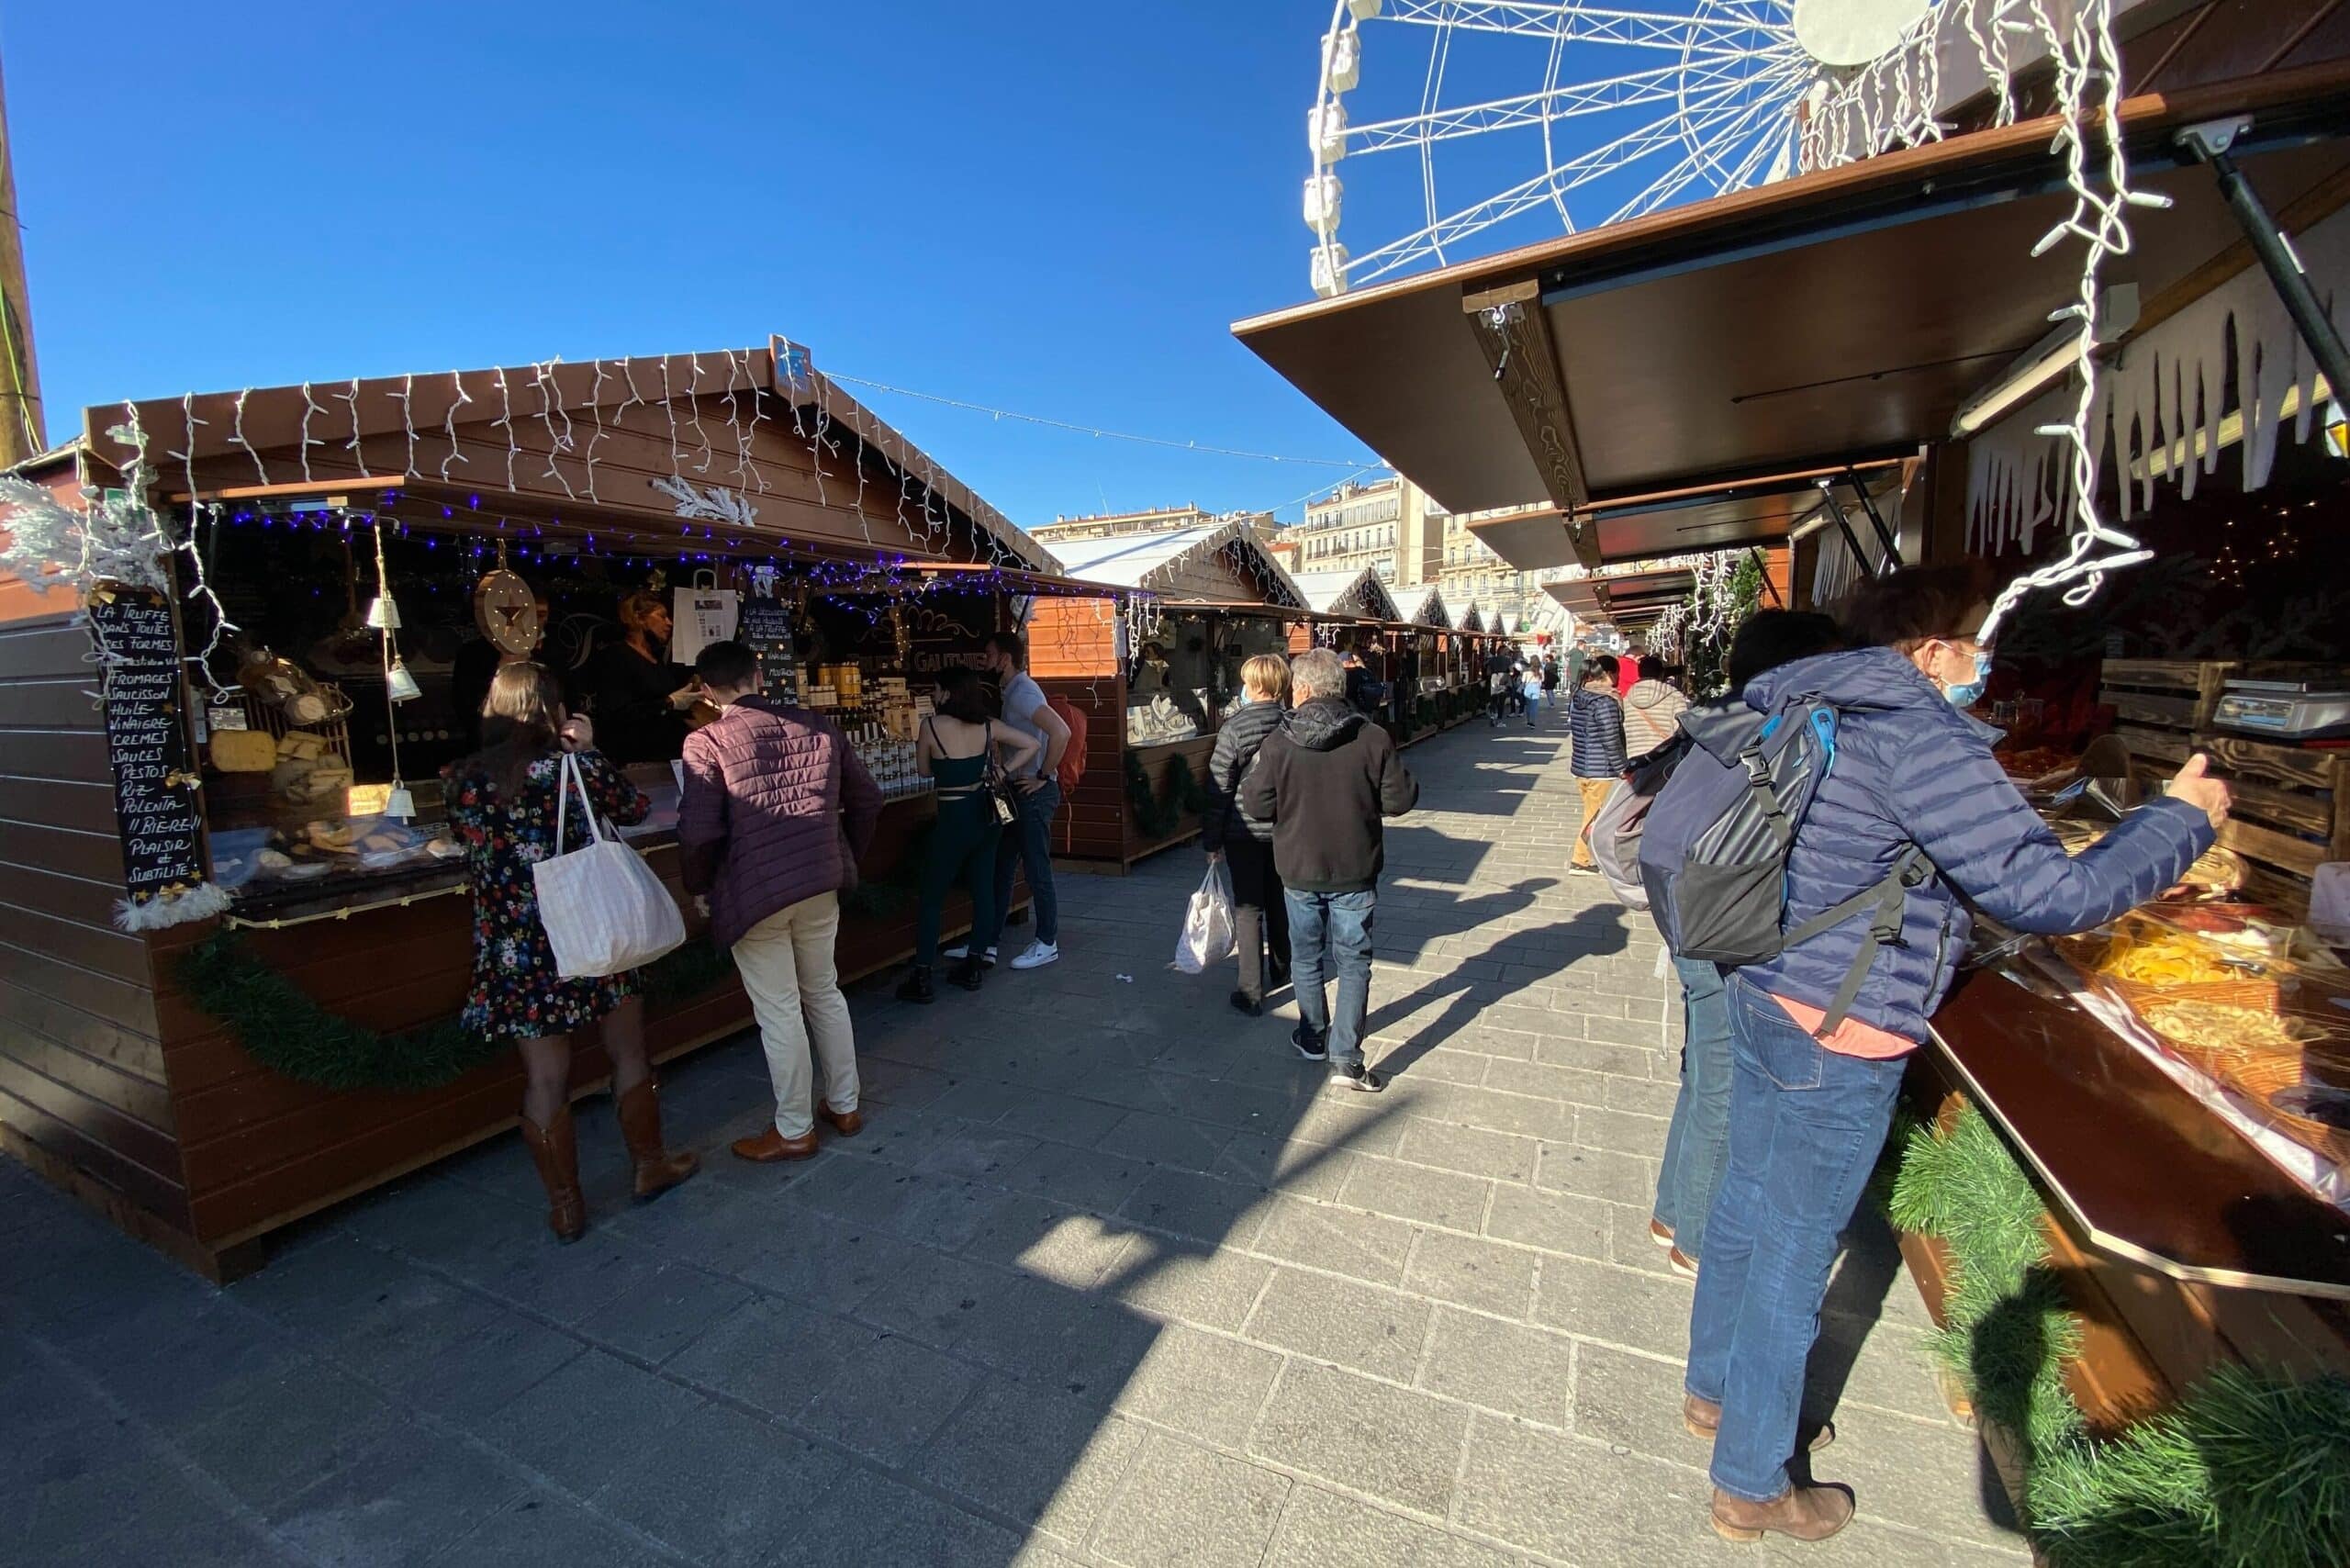 marché de Noël, La Ville de Marseille recherche les occupants des chalets pour son marché de Noël, Made in Marseille